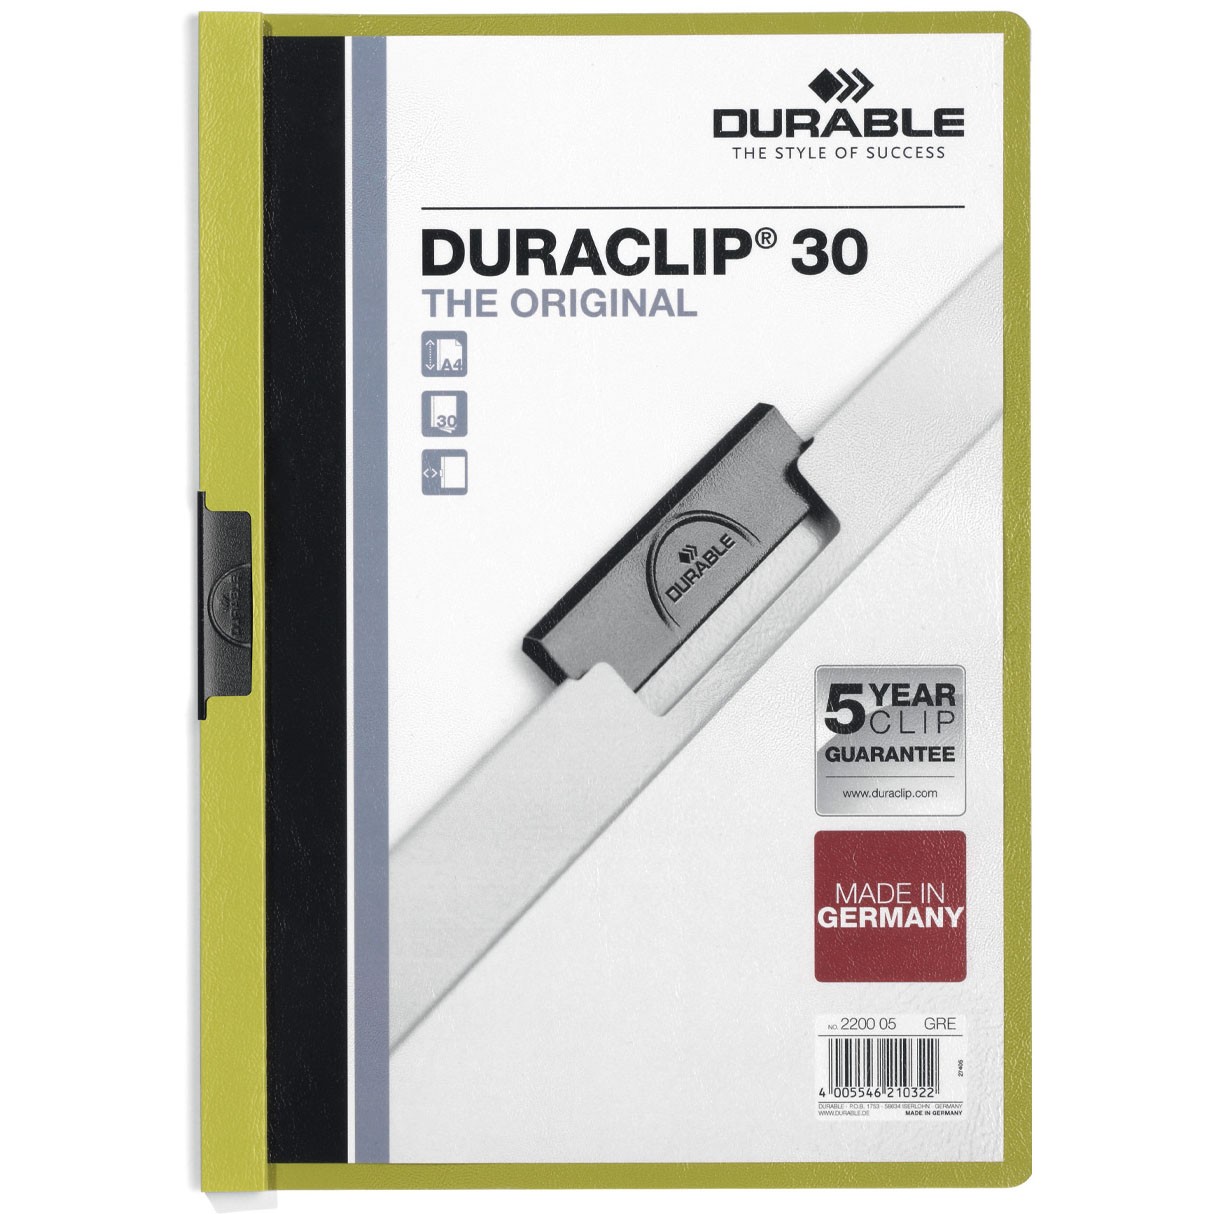 Durable Duraclip® 30 A4 klemmappe grøn